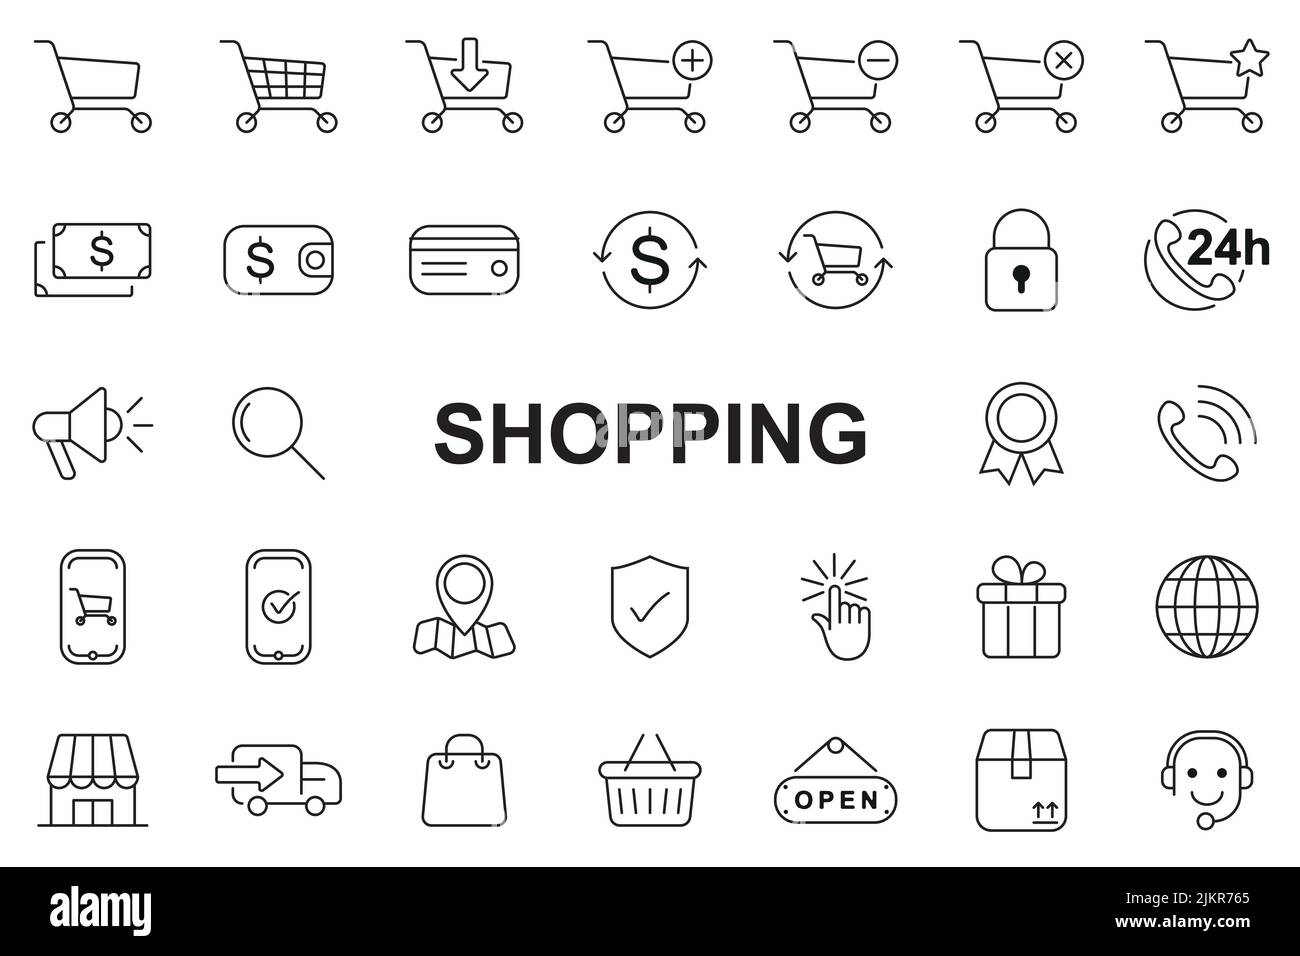 Shopping icons set - Editable stroke Stock Vector